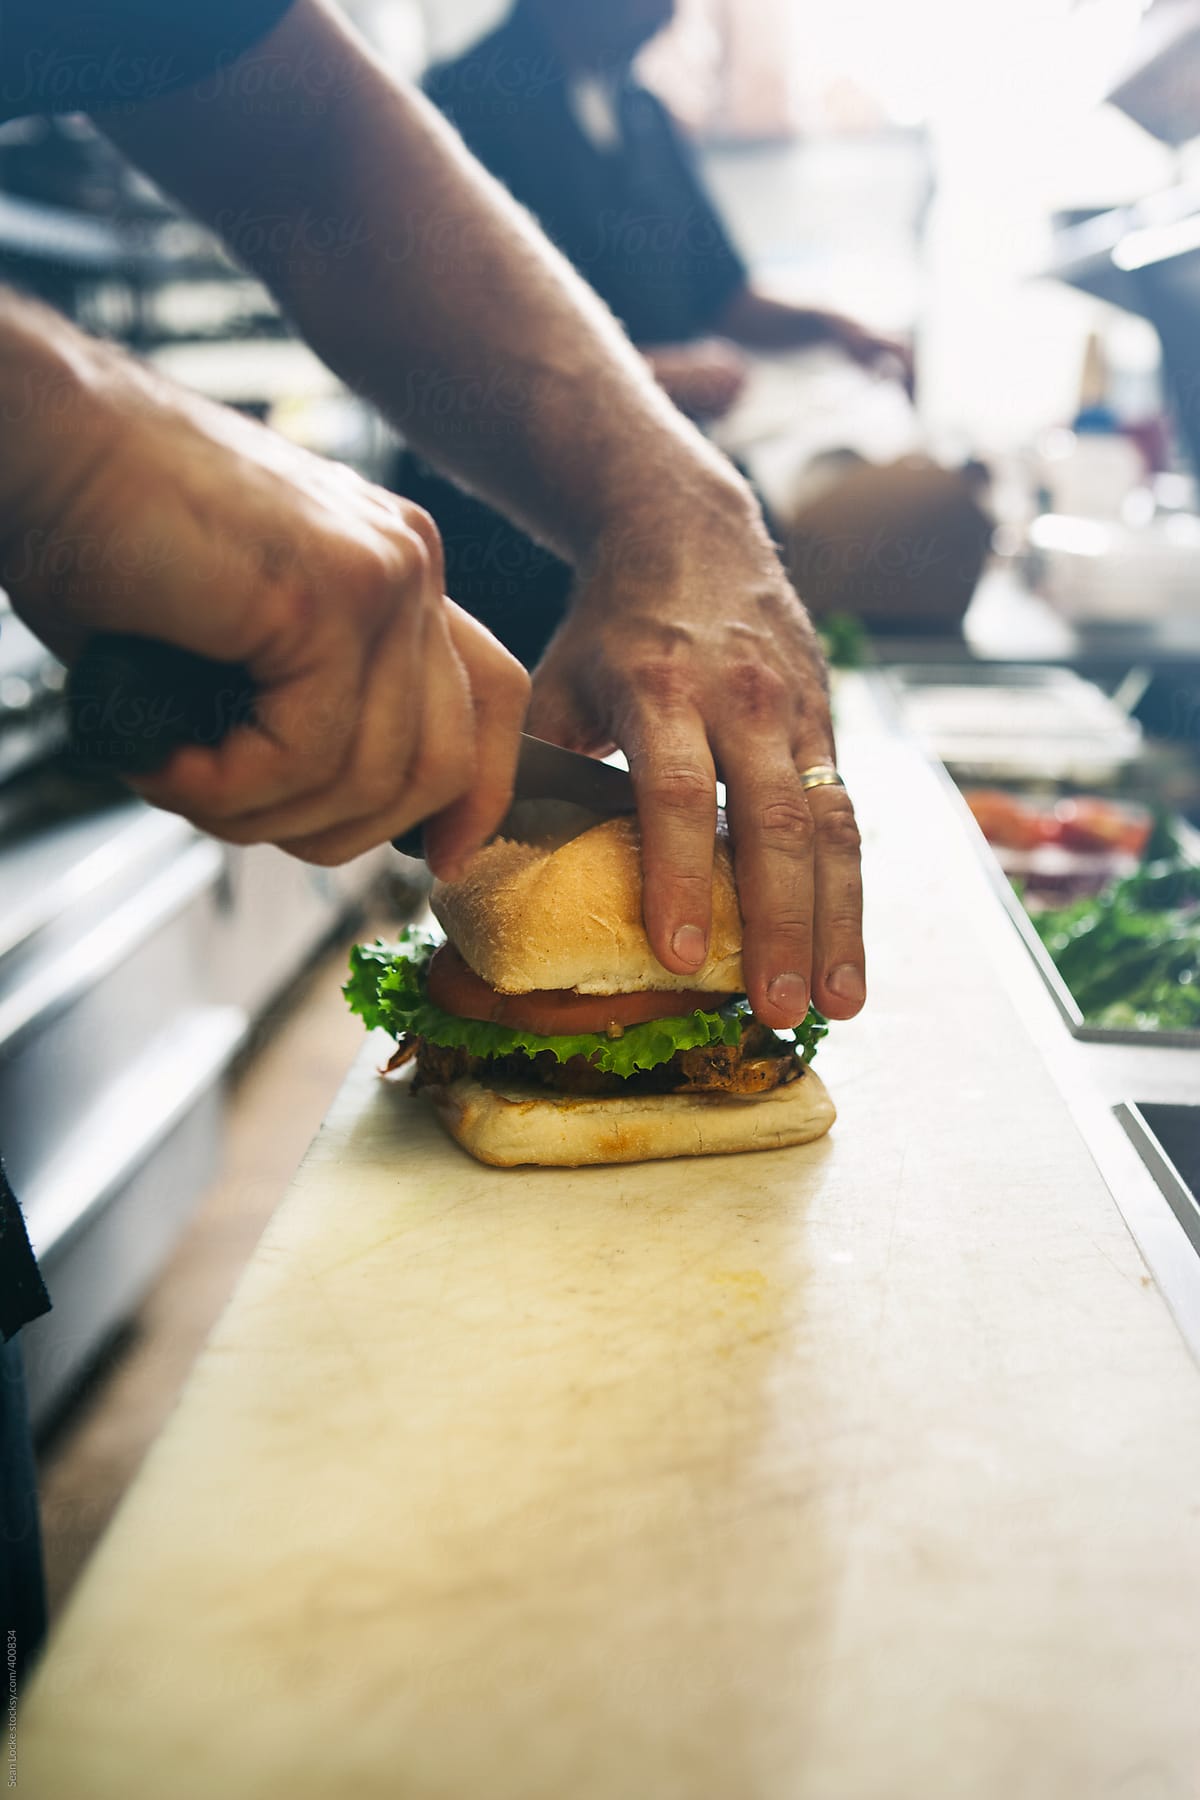 Kitchen: Cutting A Hamburger In Half